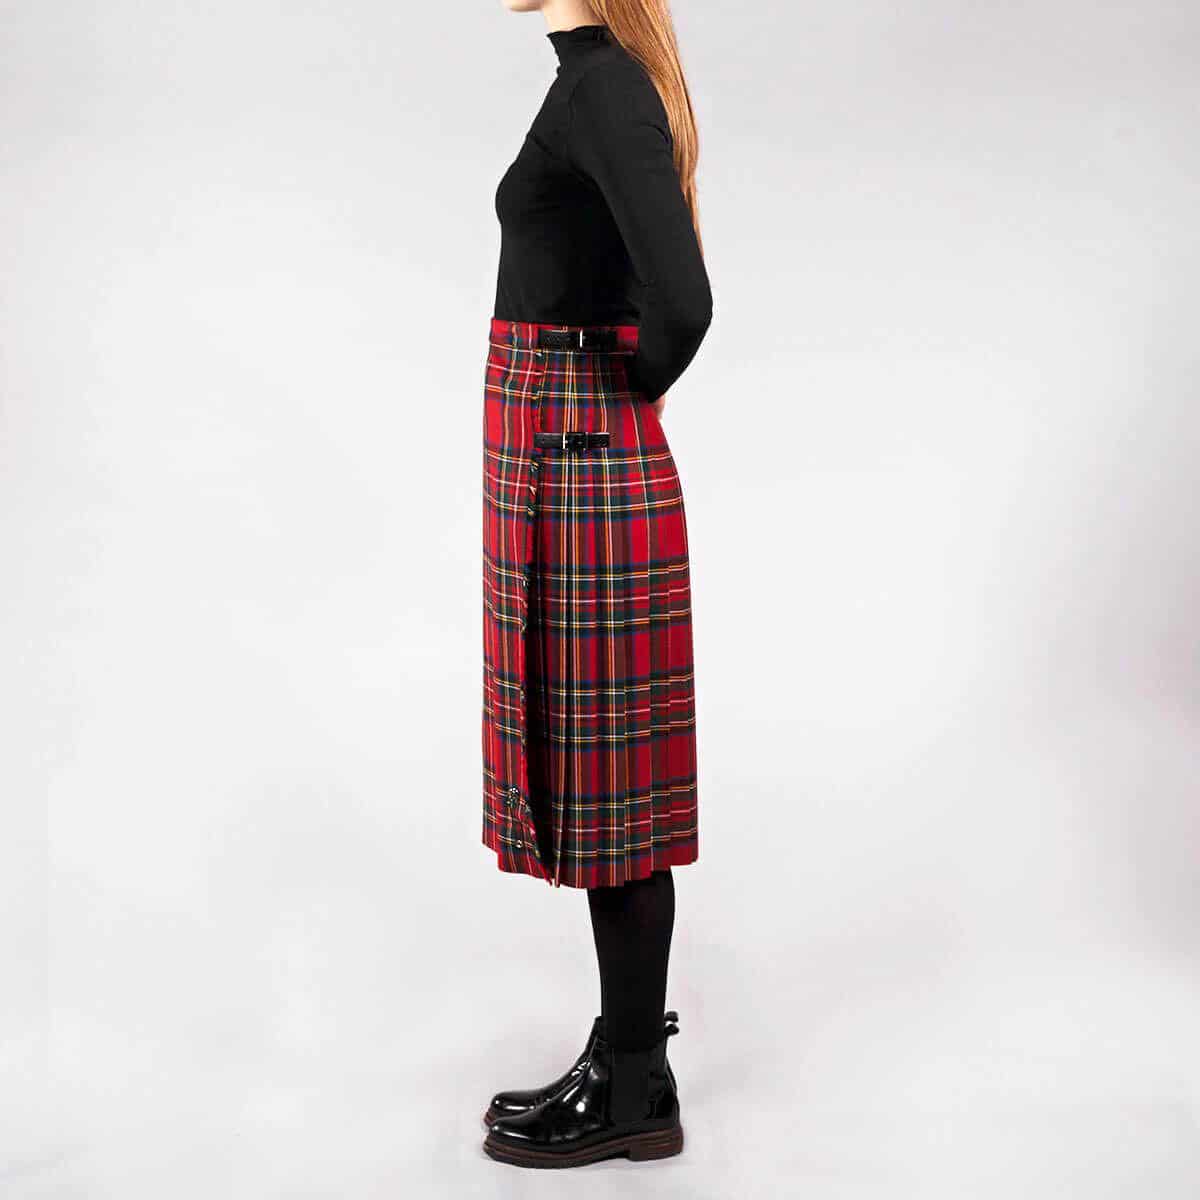 Old & Rare Tartans Standard Ladies' Kilted Skirt | Kilts-n-Stuff.com